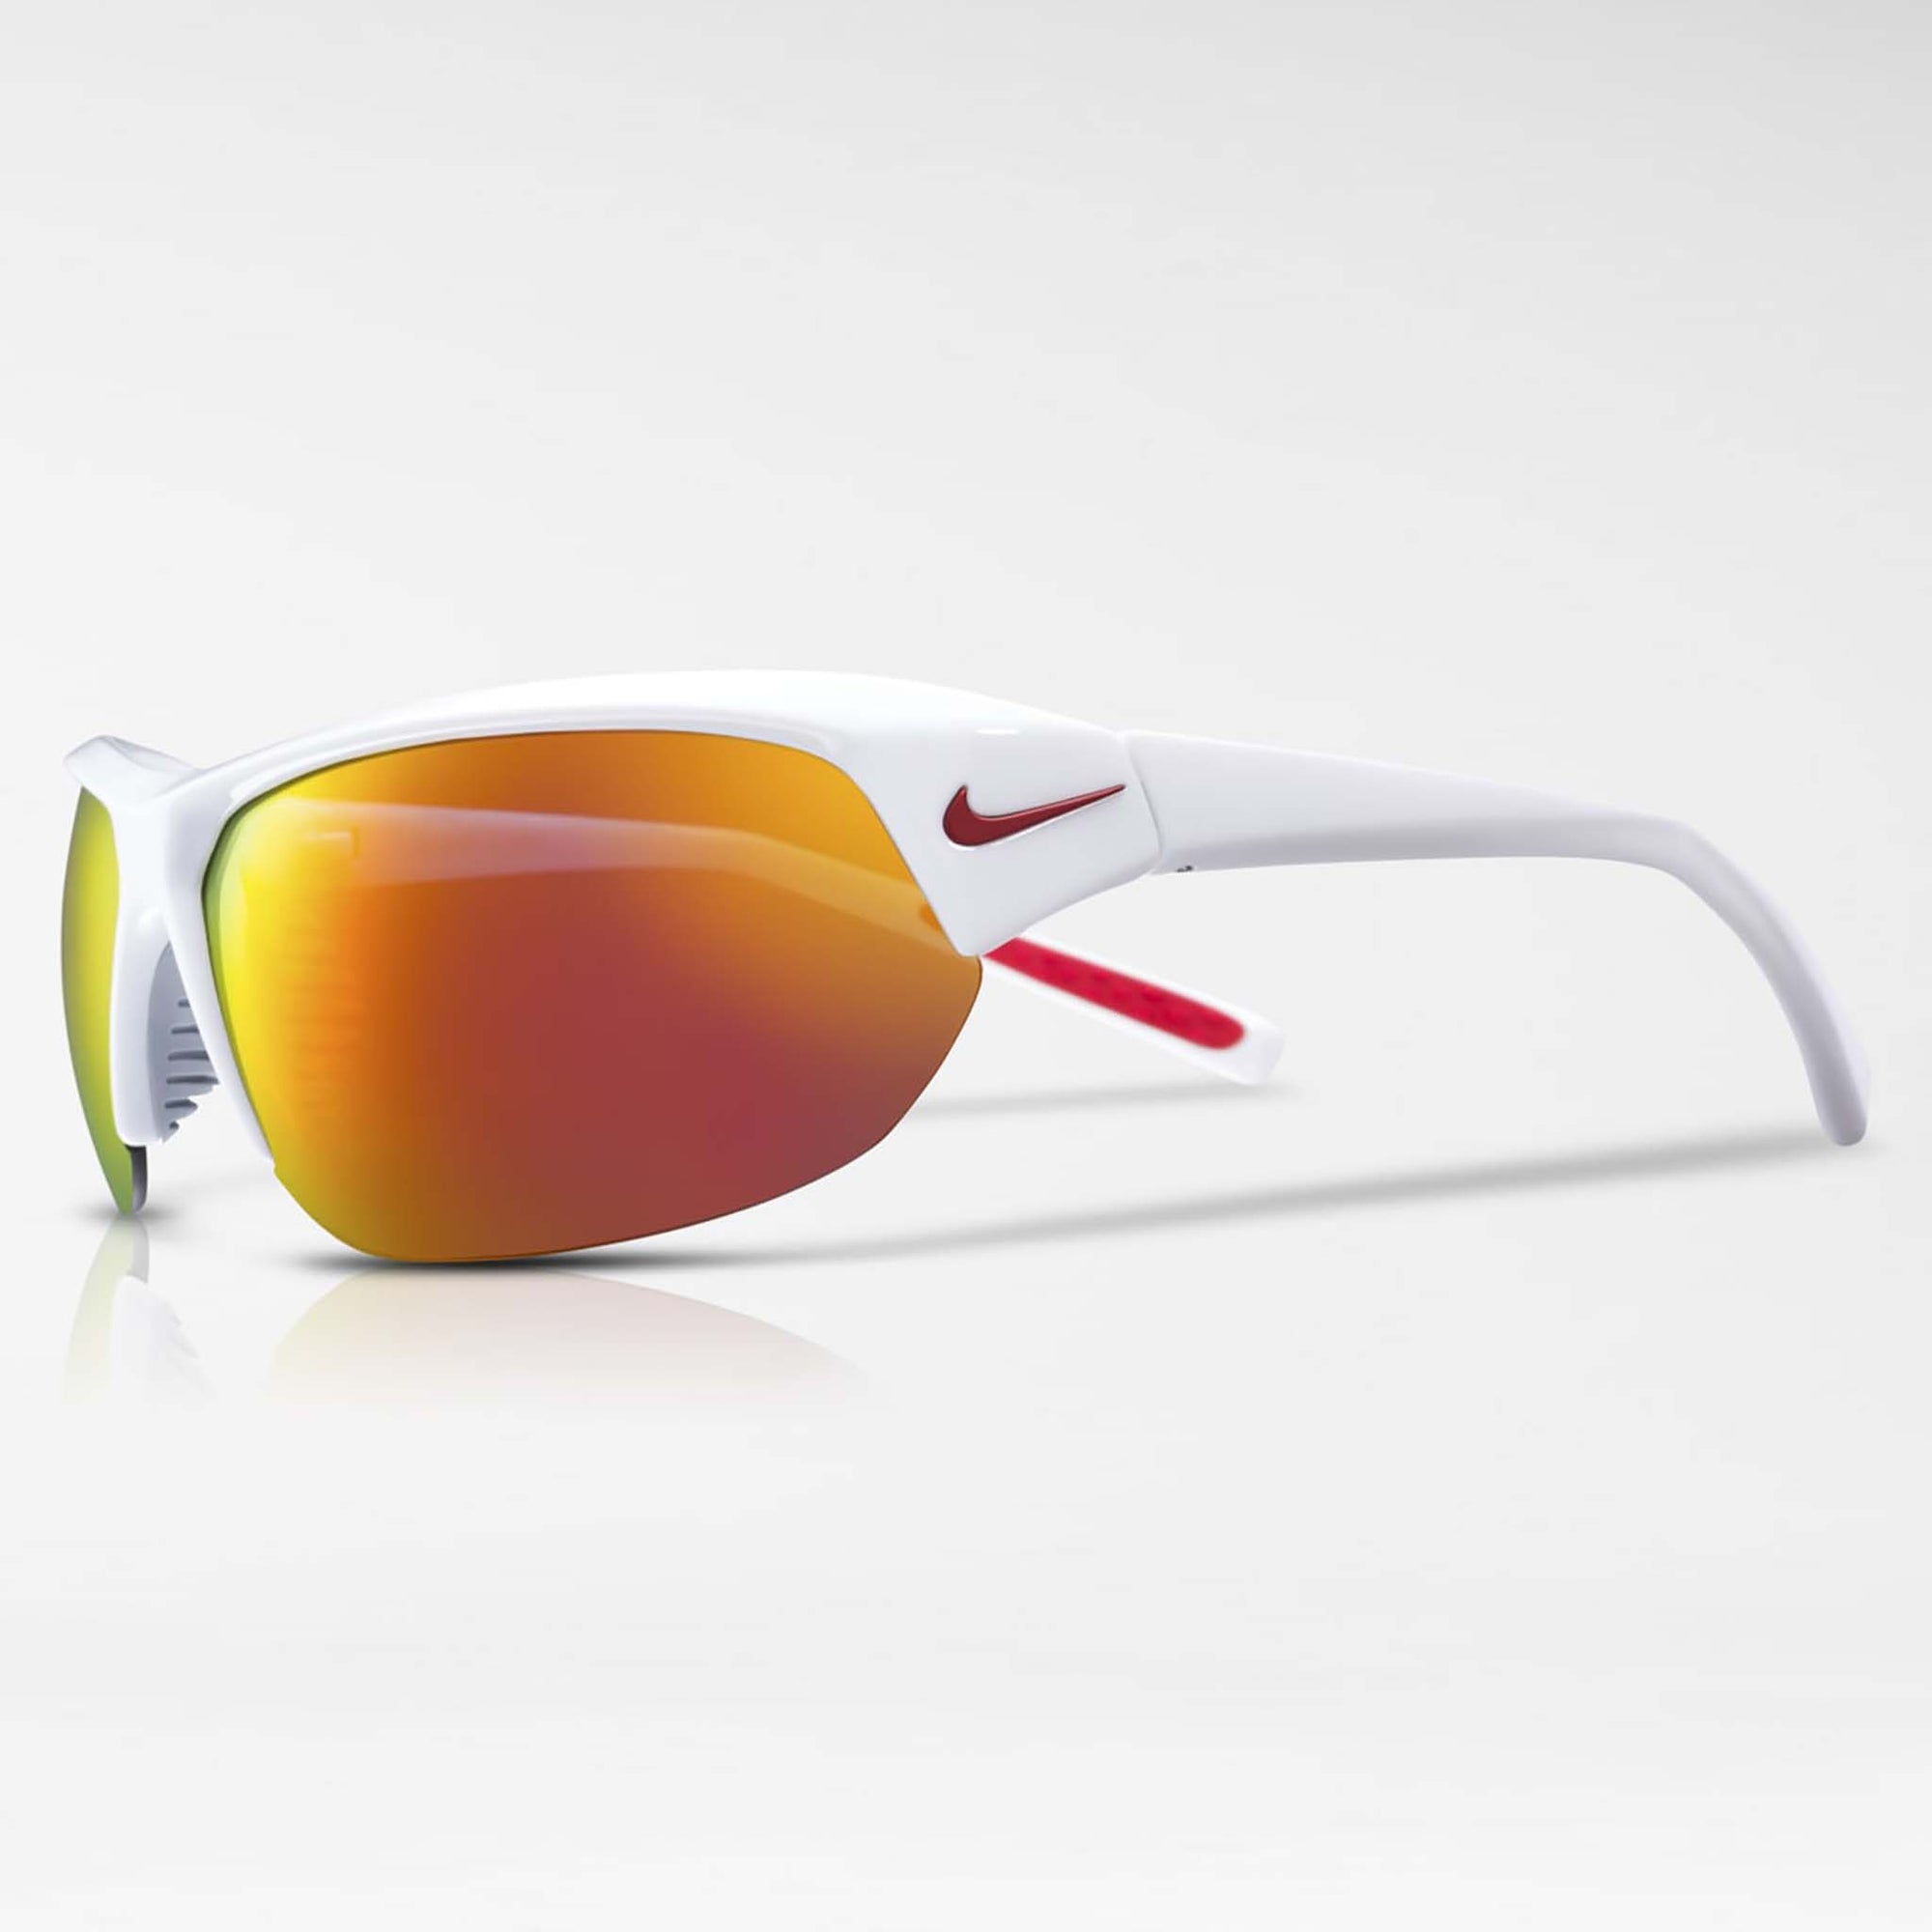 Nike Skylon Ace lunettes de soleil sport noir bleu miroir lateral